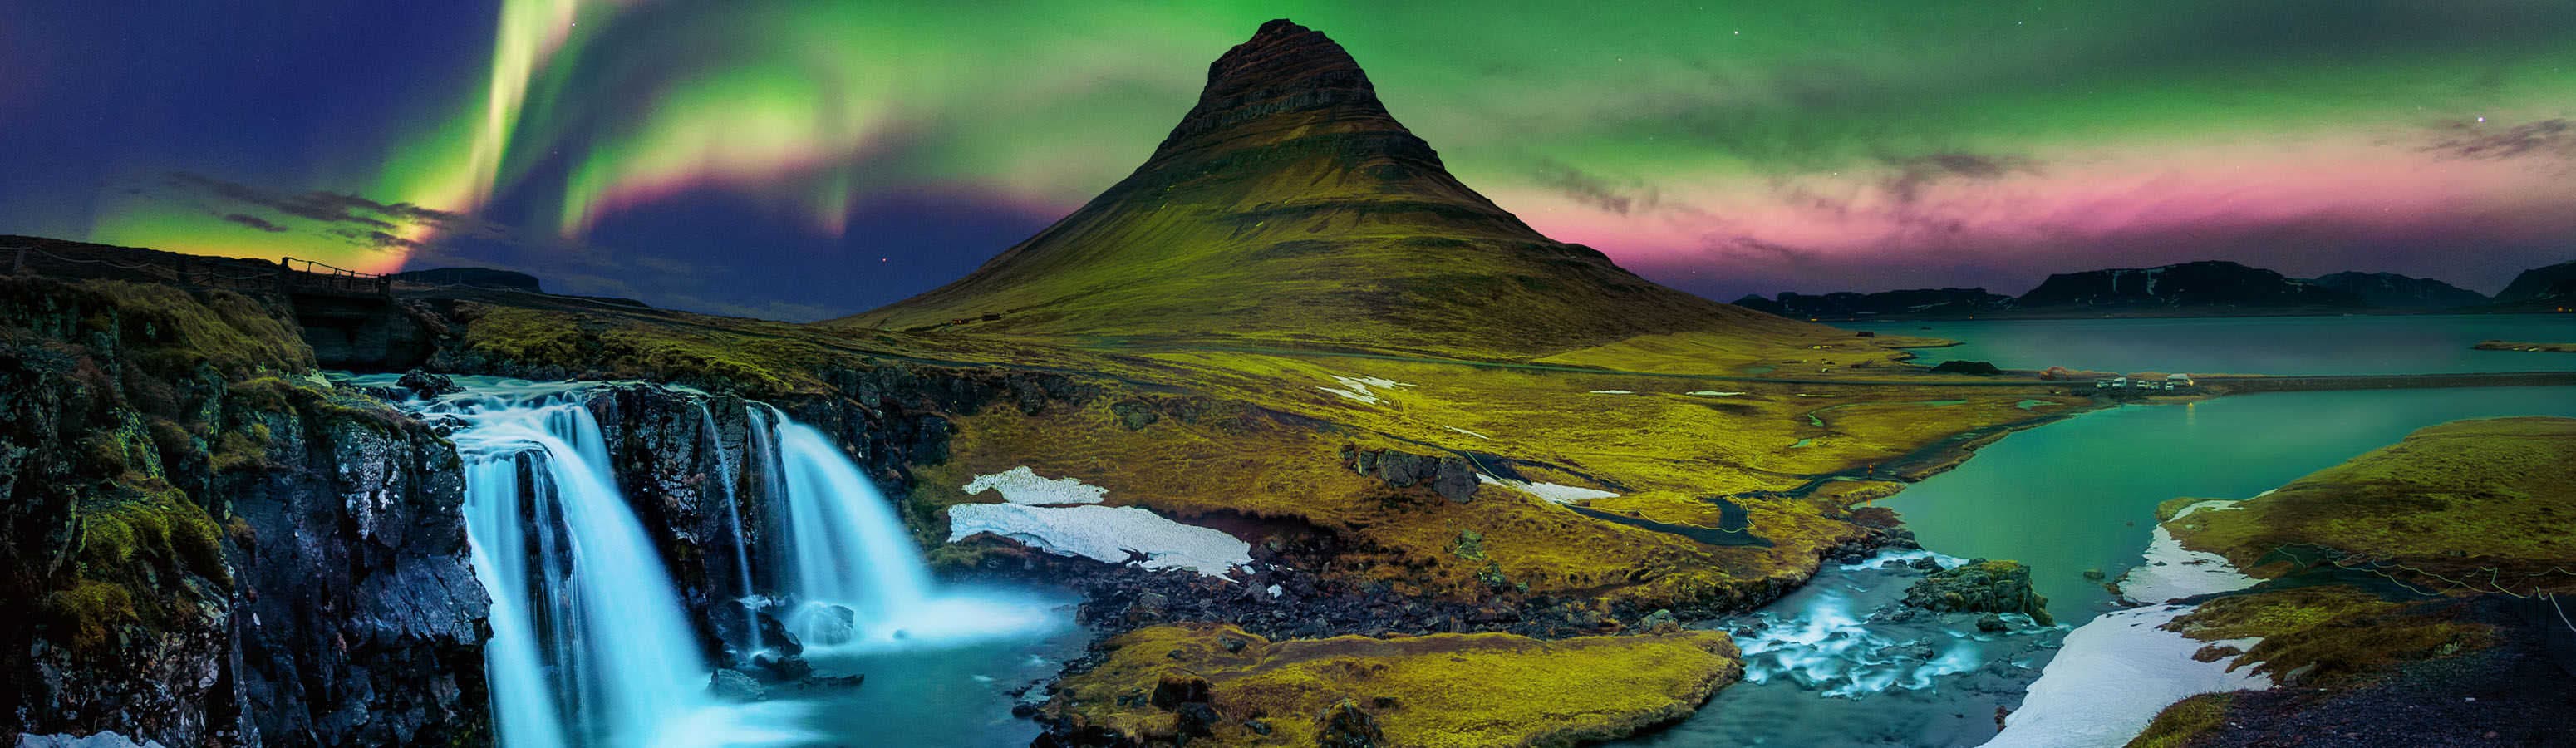 Izland - amikor a természet fest az égen